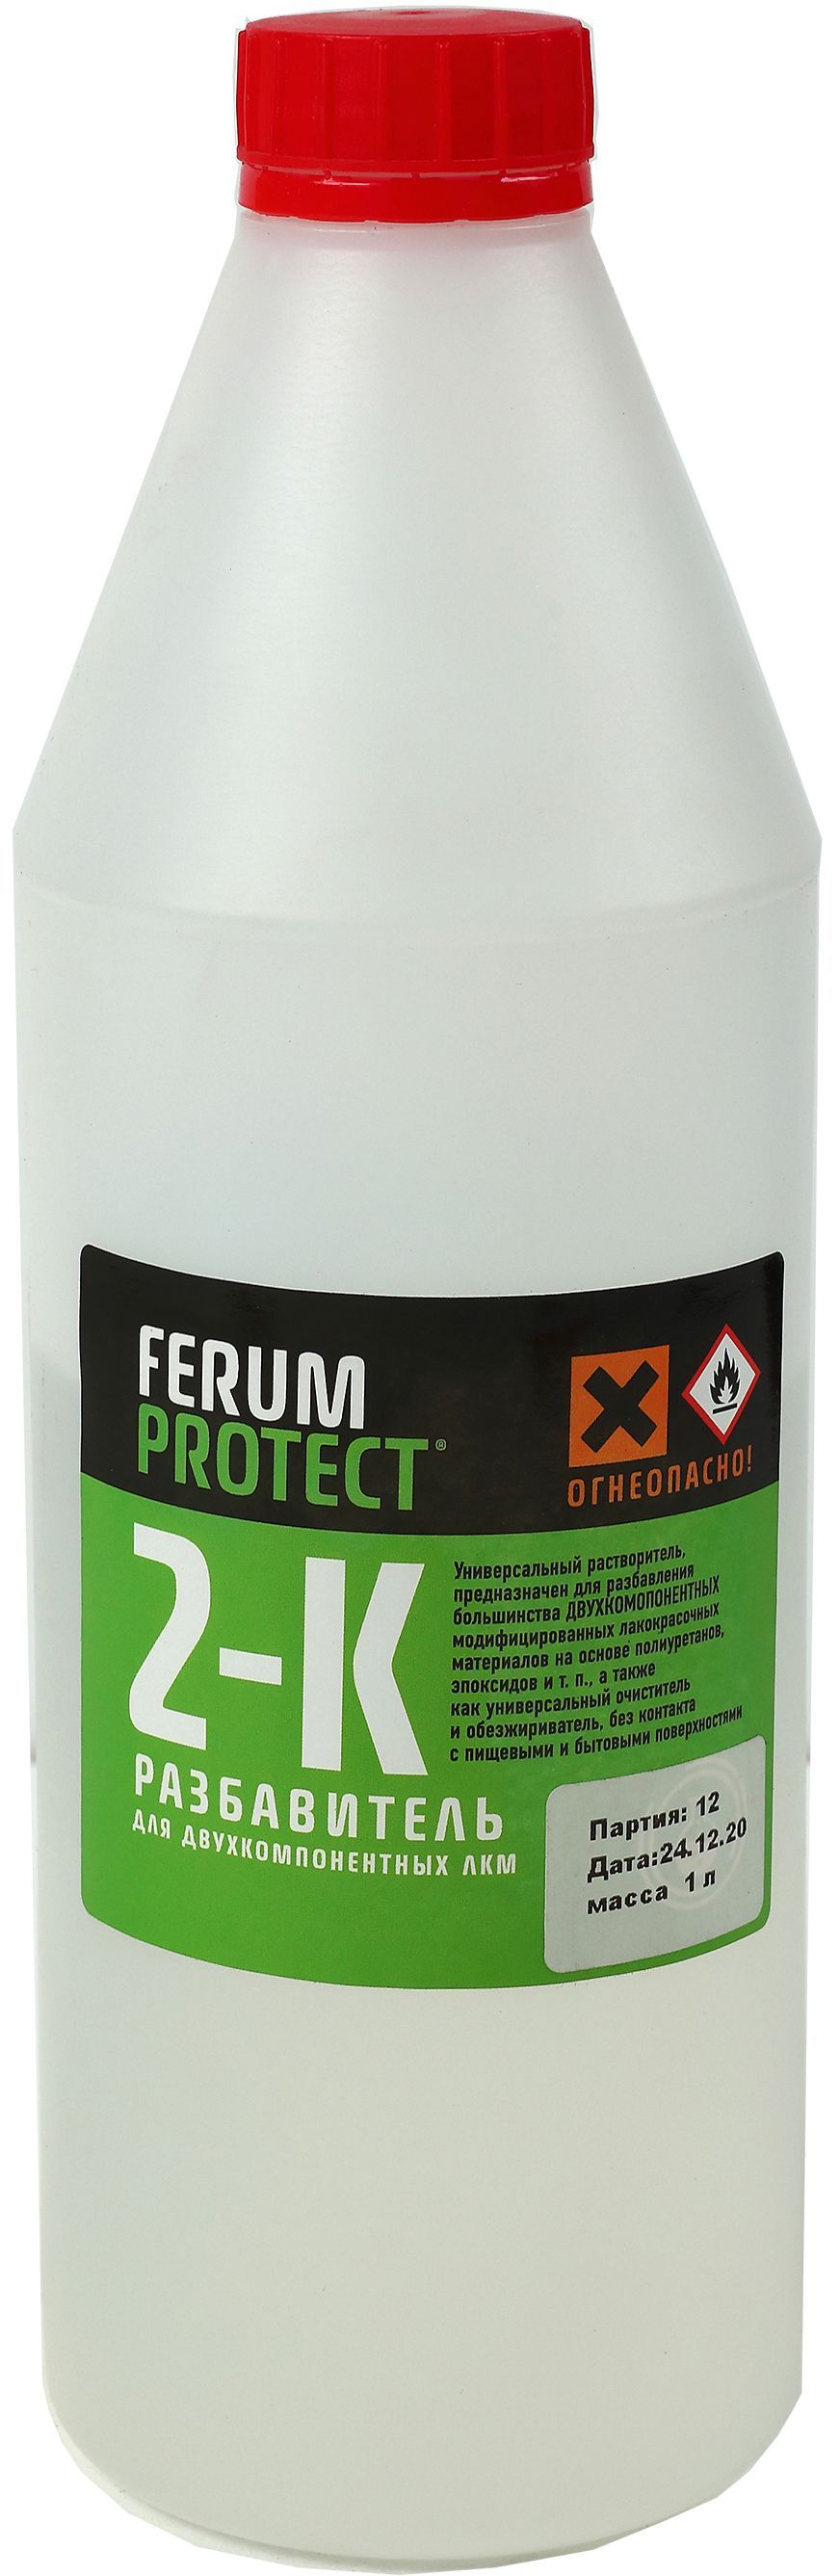 Ferumprotect-2к растворитель для 2-компонентных